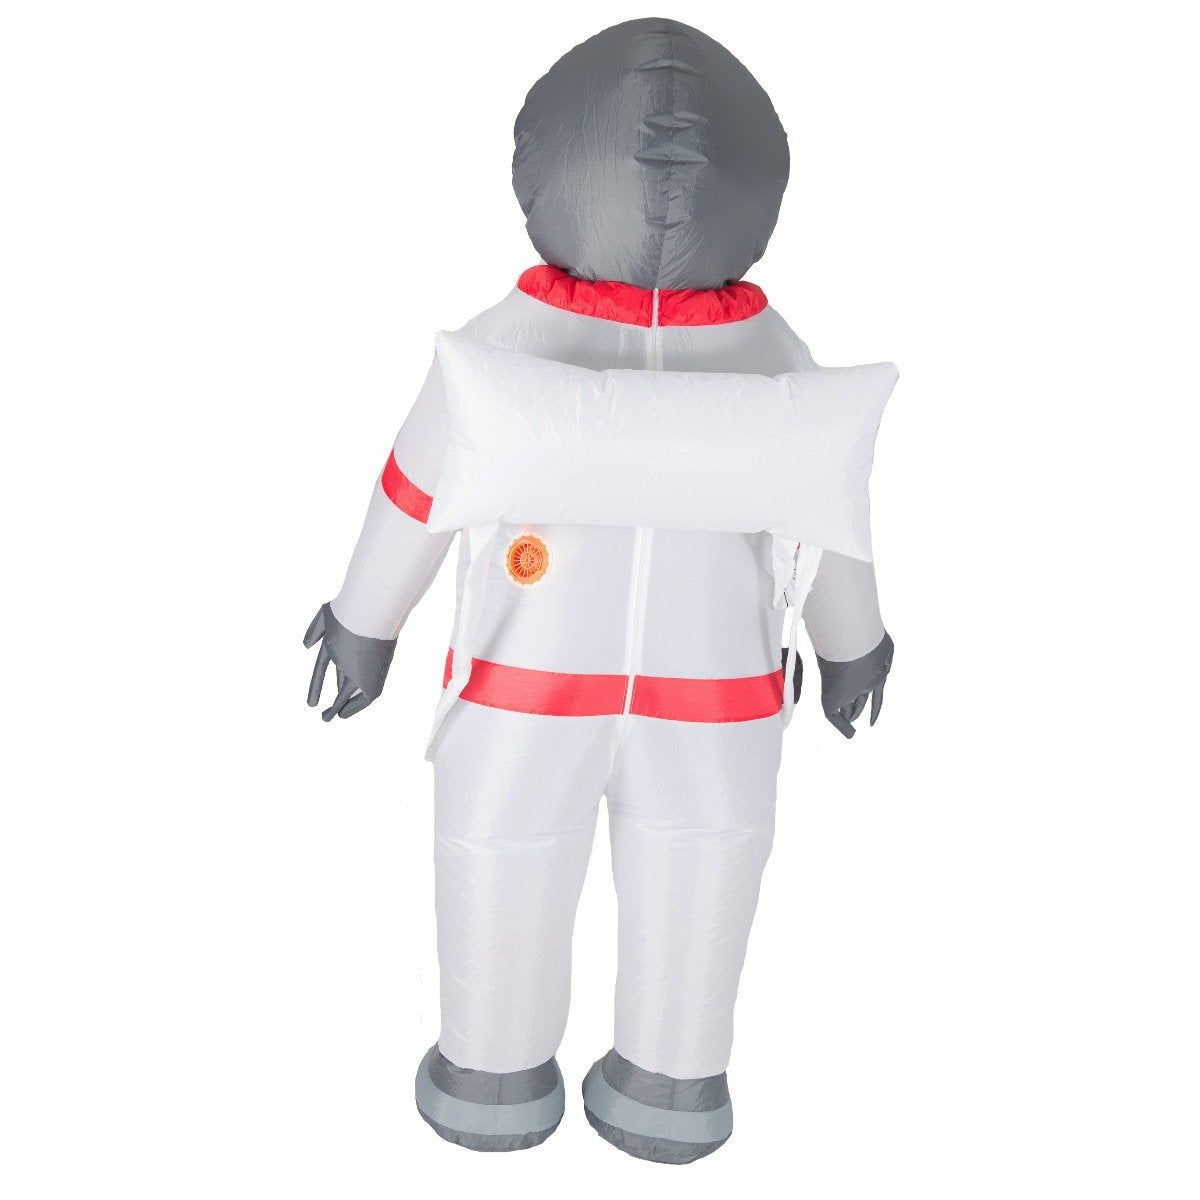 Bodysocks - Inflatable Astronaut Costume